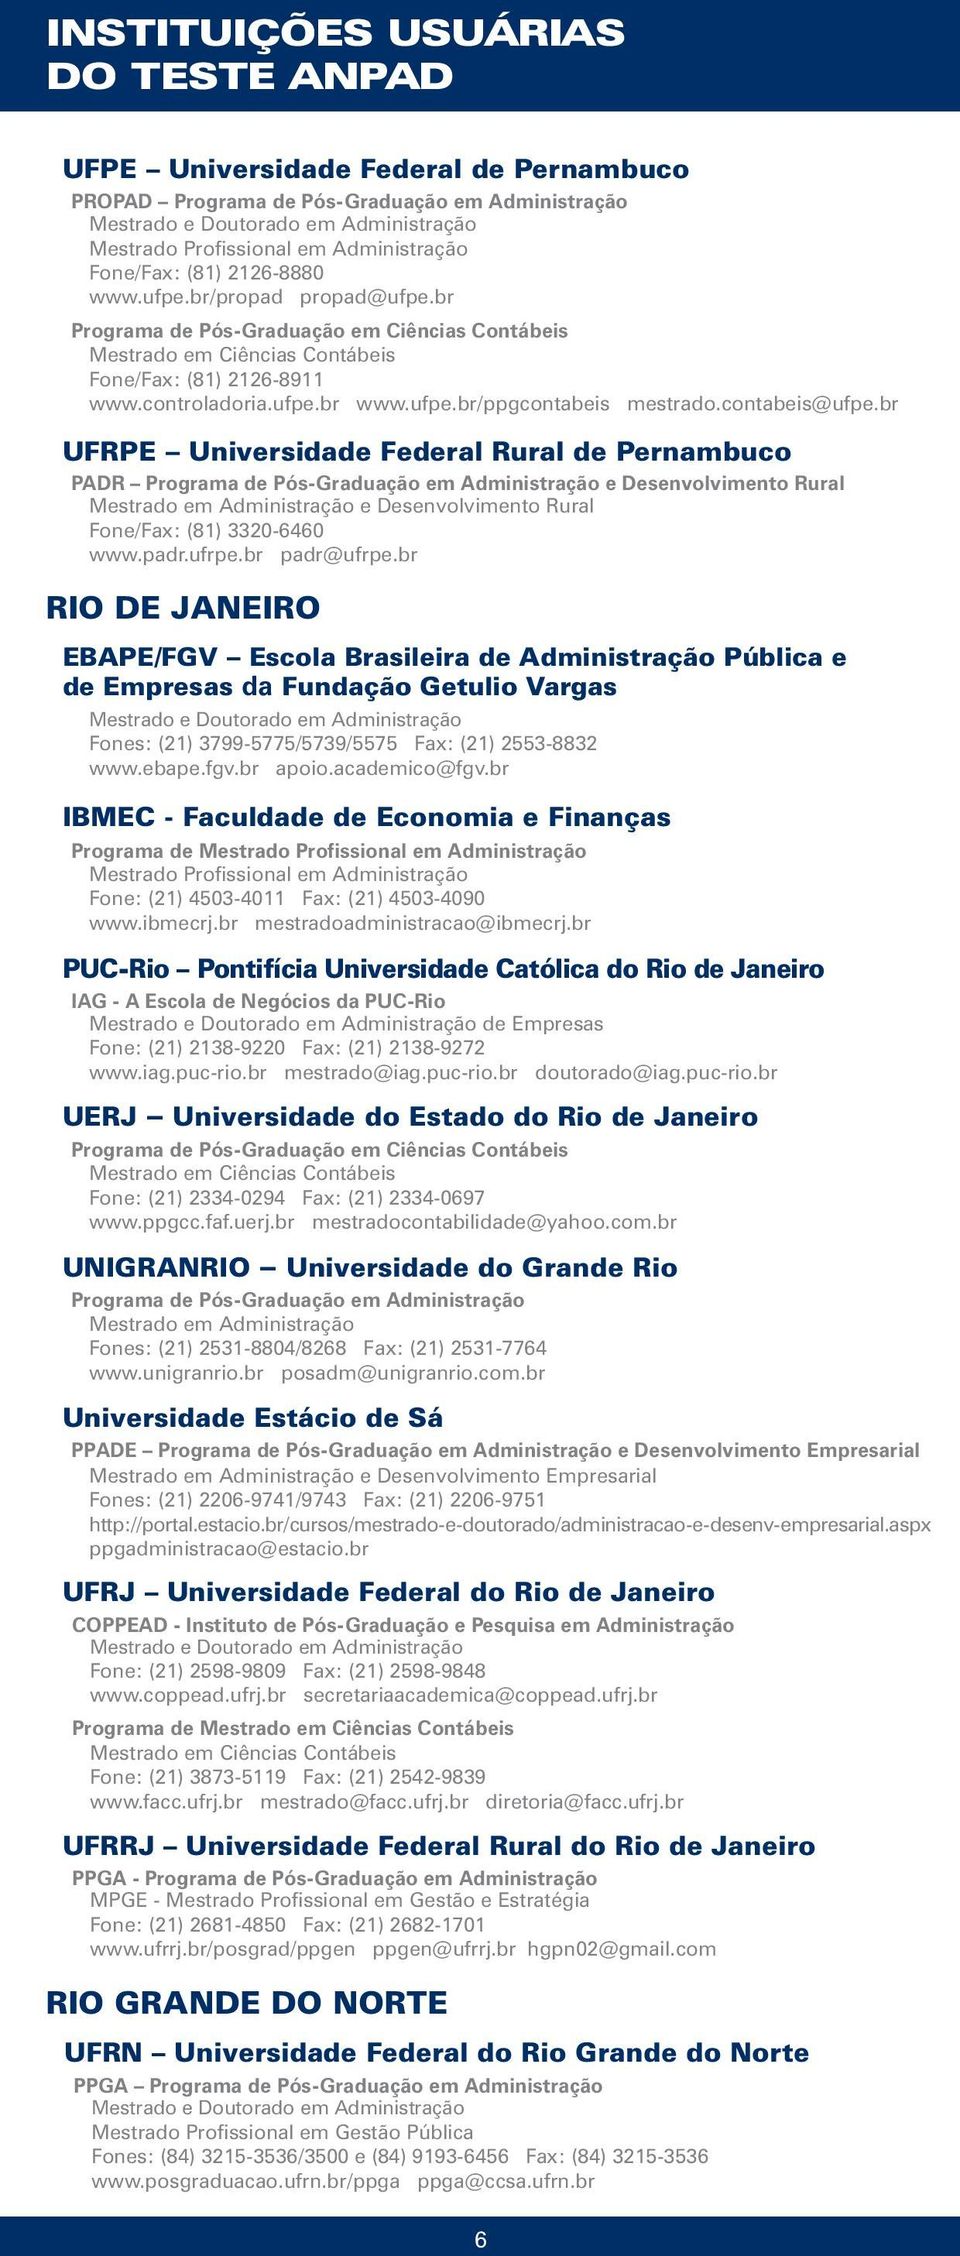 br UFRPE Universidade Federal Rural de Pernambuco PADR e Desenvolvimento Rural e Desenvolvimento Rural Fone/Fax: (81) 3320-6460 www.padr.ufrpe.br padr@ufrpe.